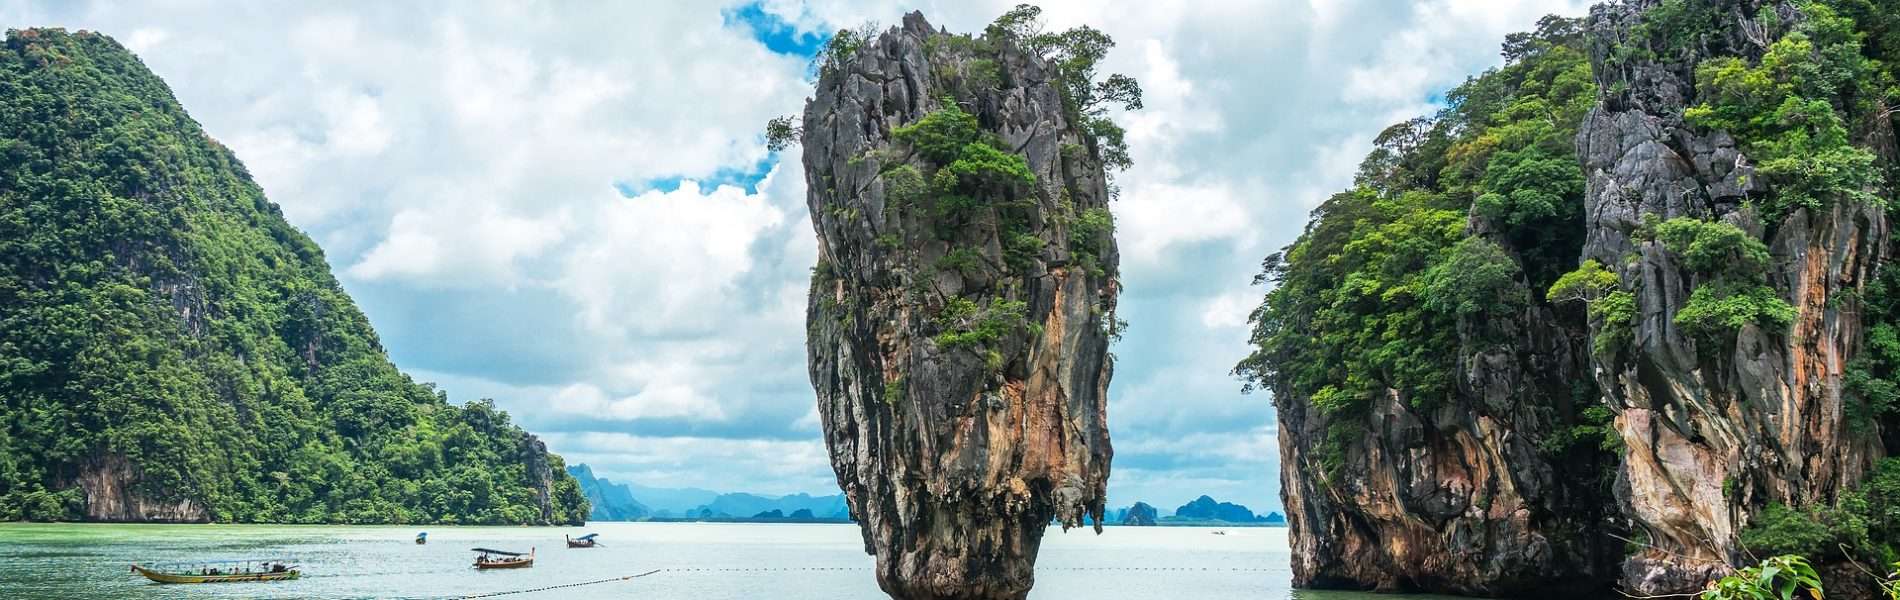 10 המקומות שאסור לכם לפספס בתאילנד